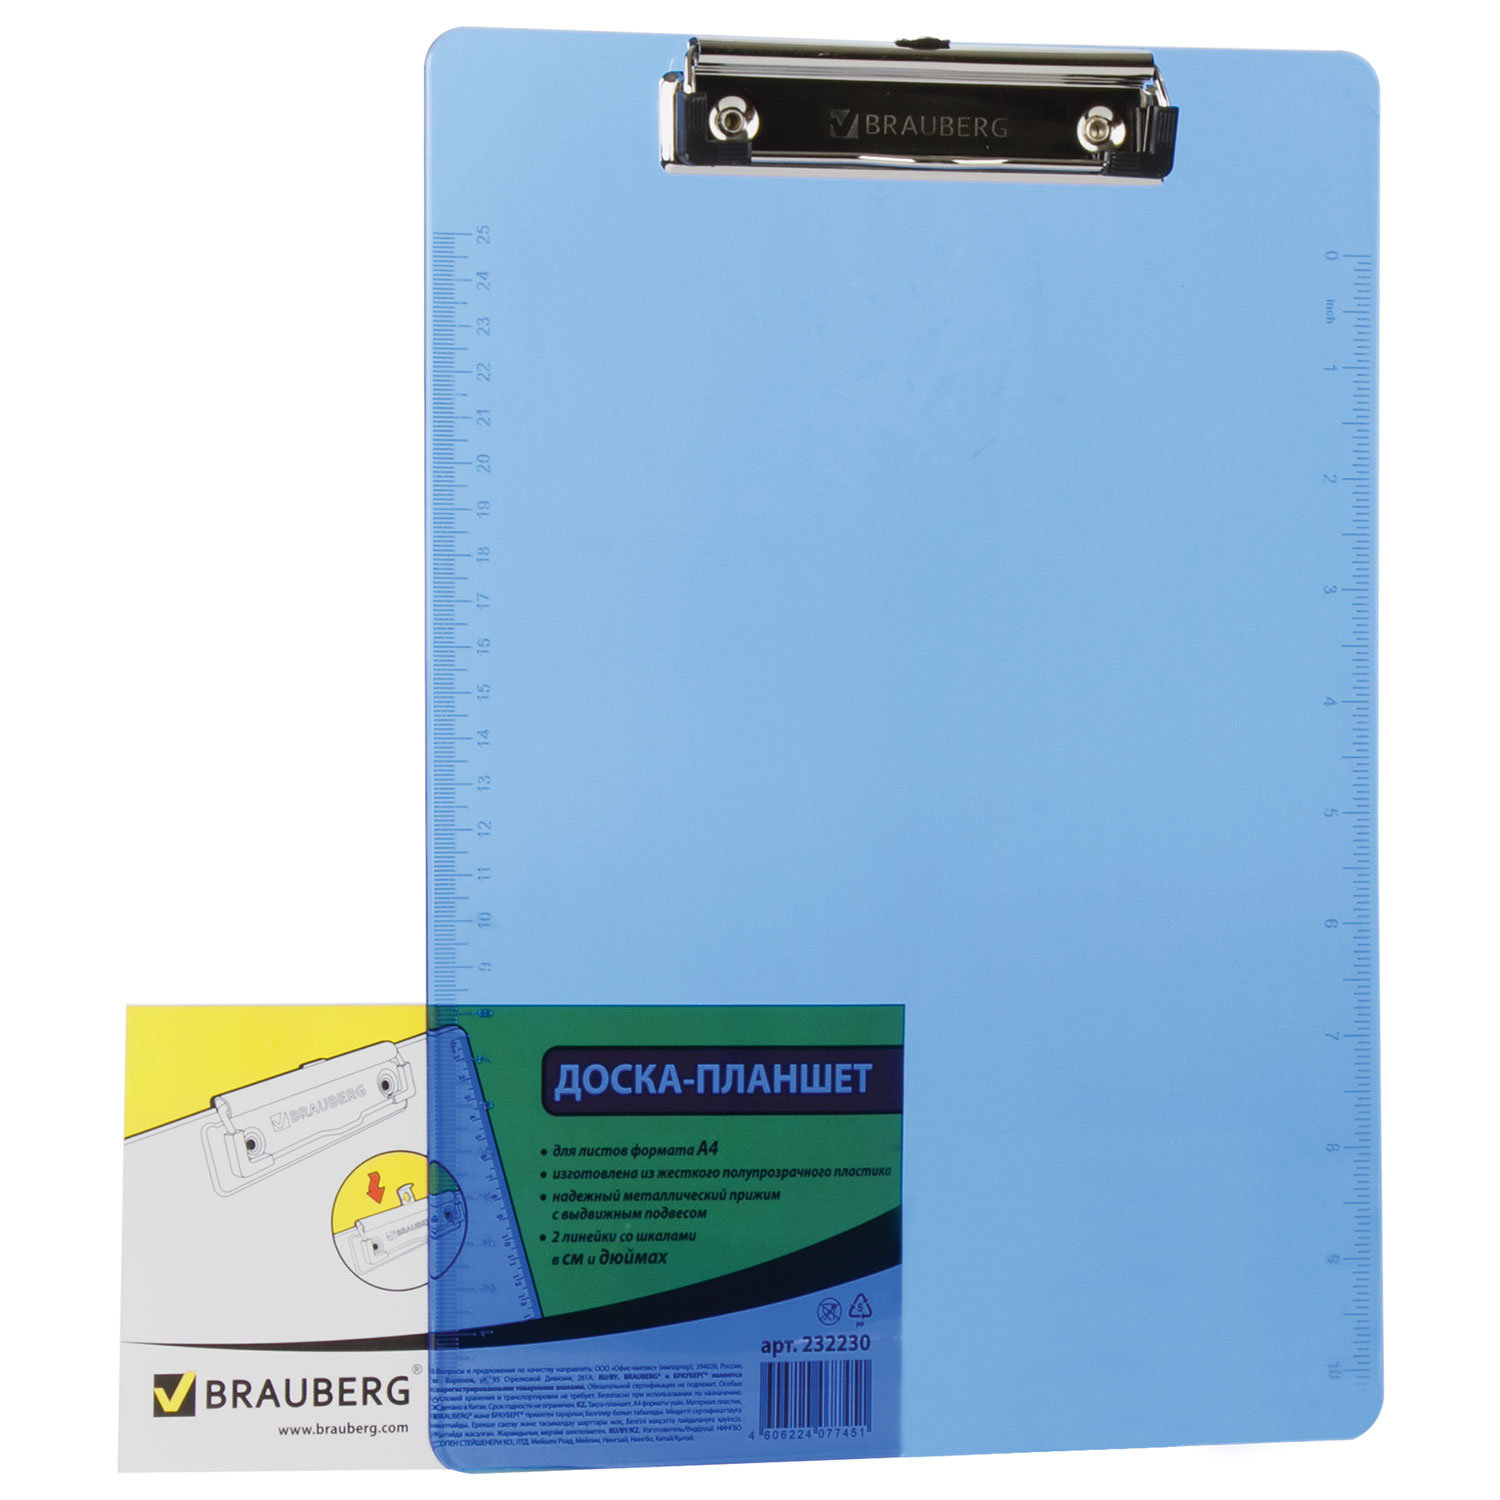 Доска-планшет Brauberg 232230 синяя